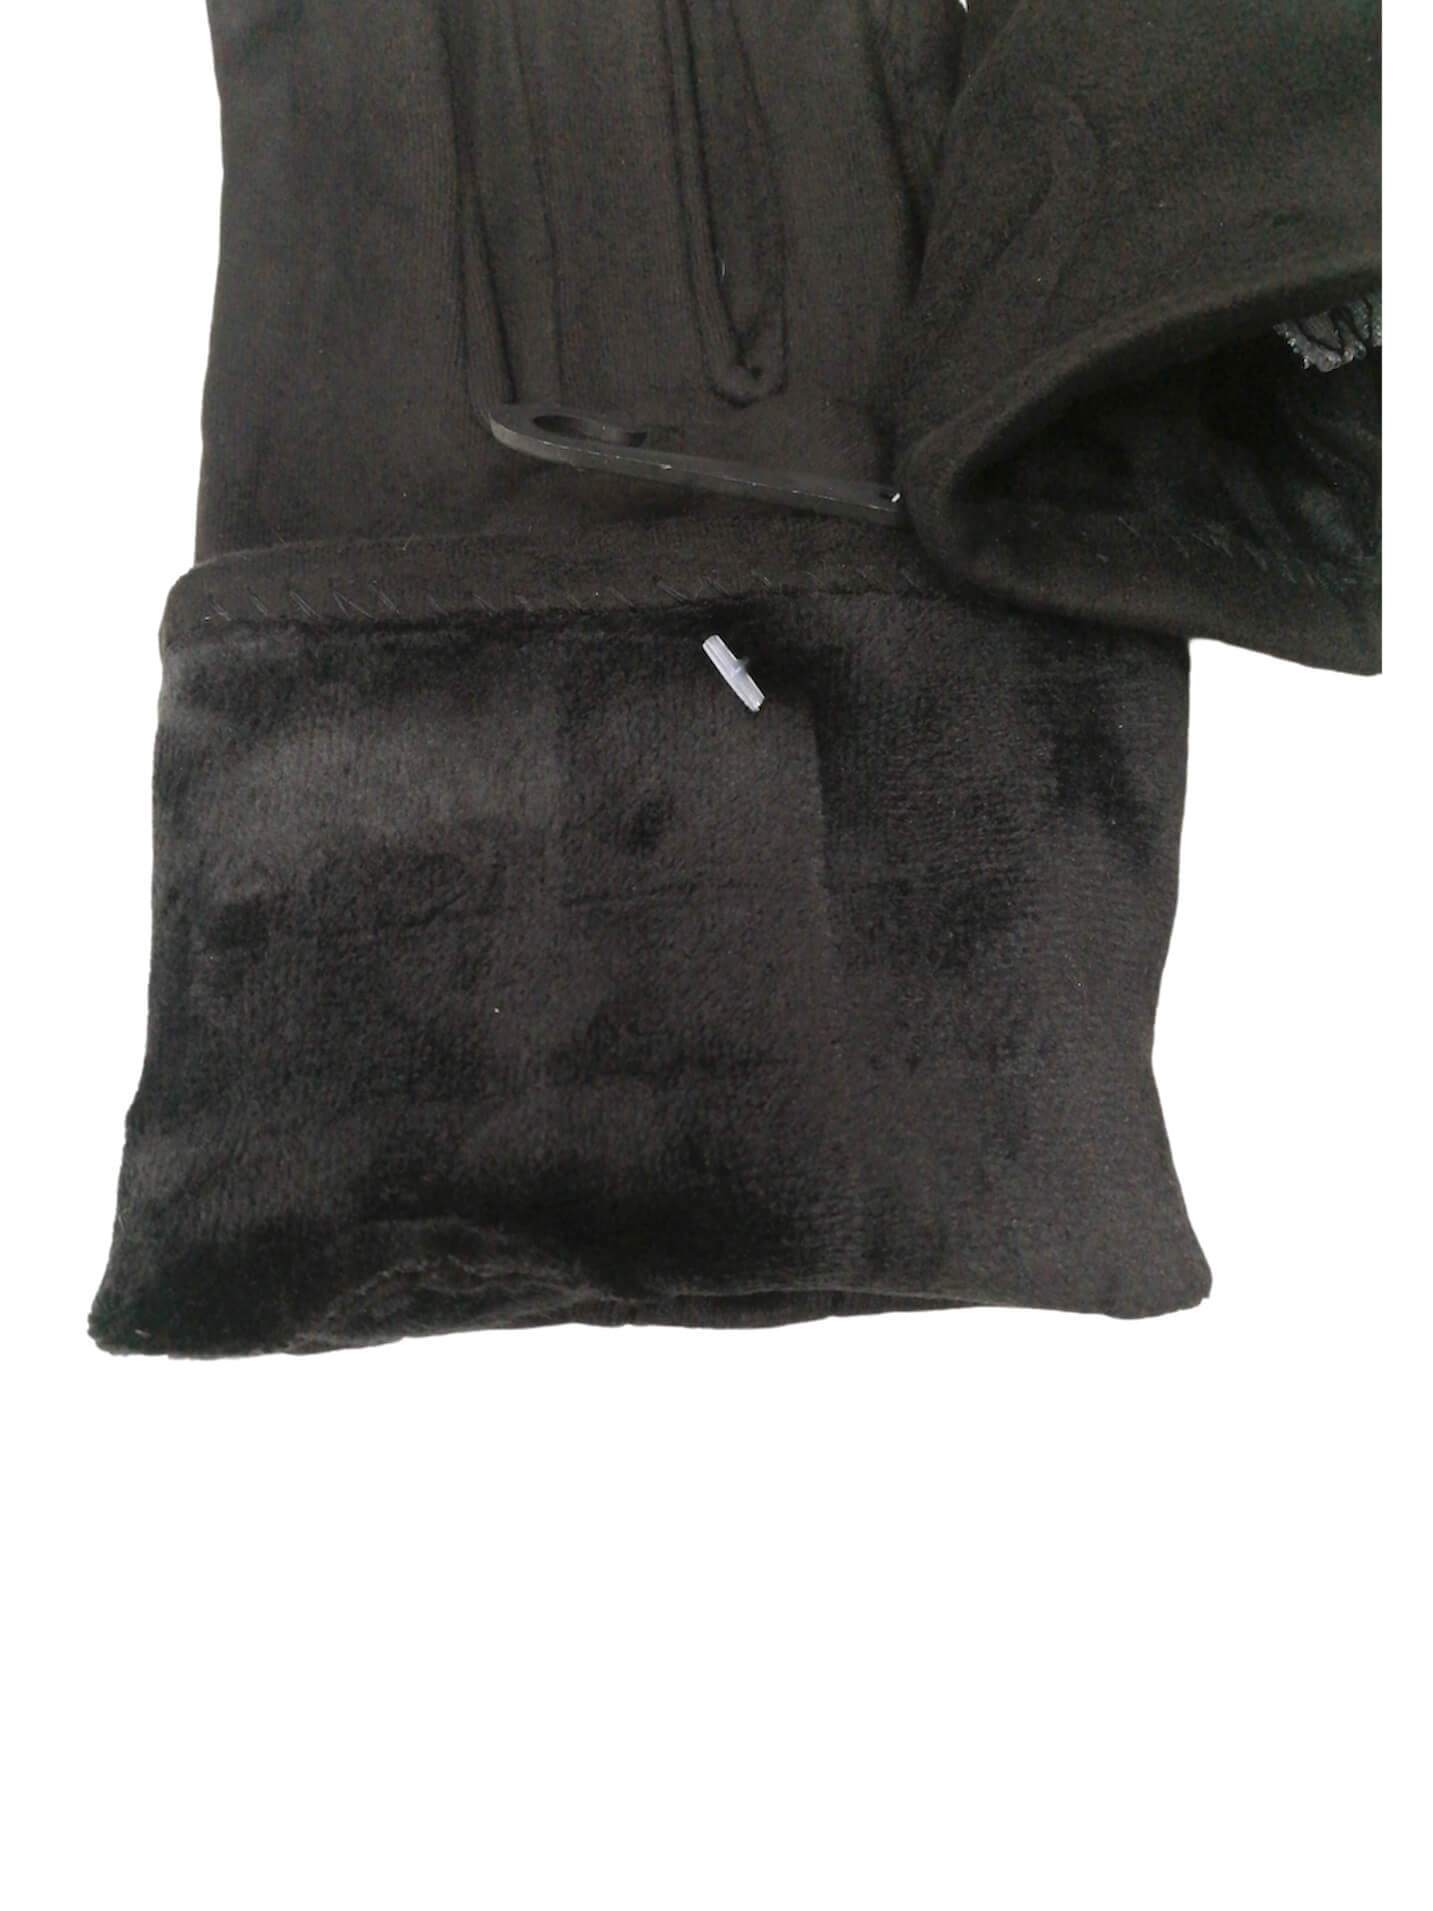 Gants simples noir doux avec doublure (x12) 2,50€/paire | Grossiste-pro